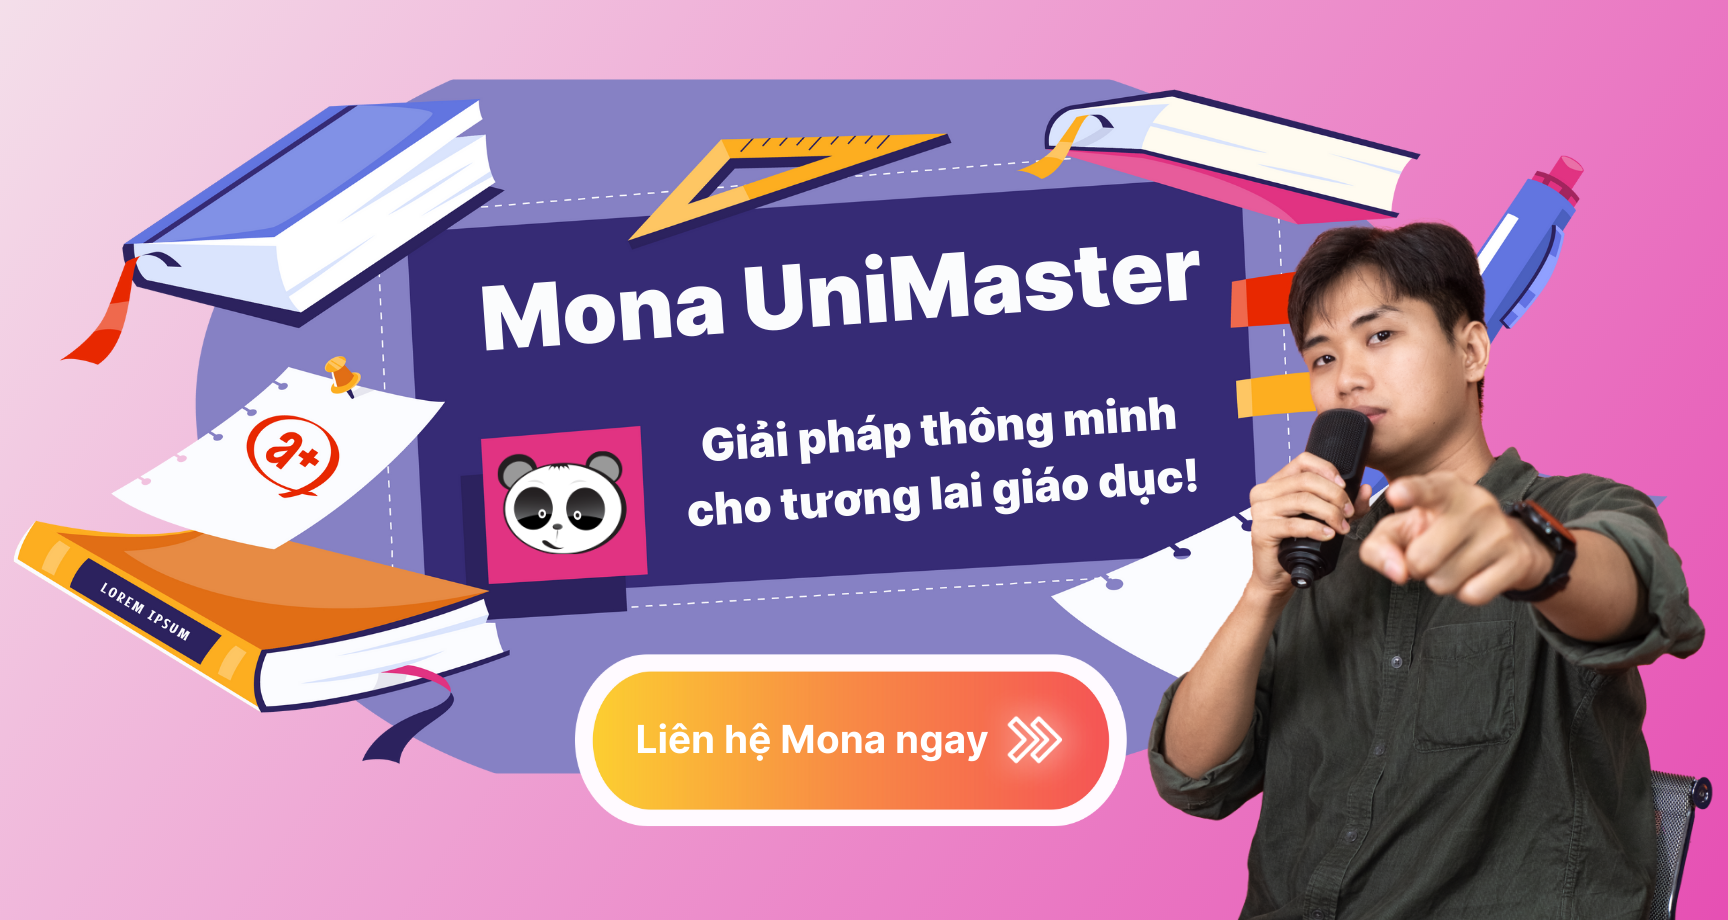 Hệ thống quản lý đào tạo tín chỉ uy tín nhất – Mona UniMaster